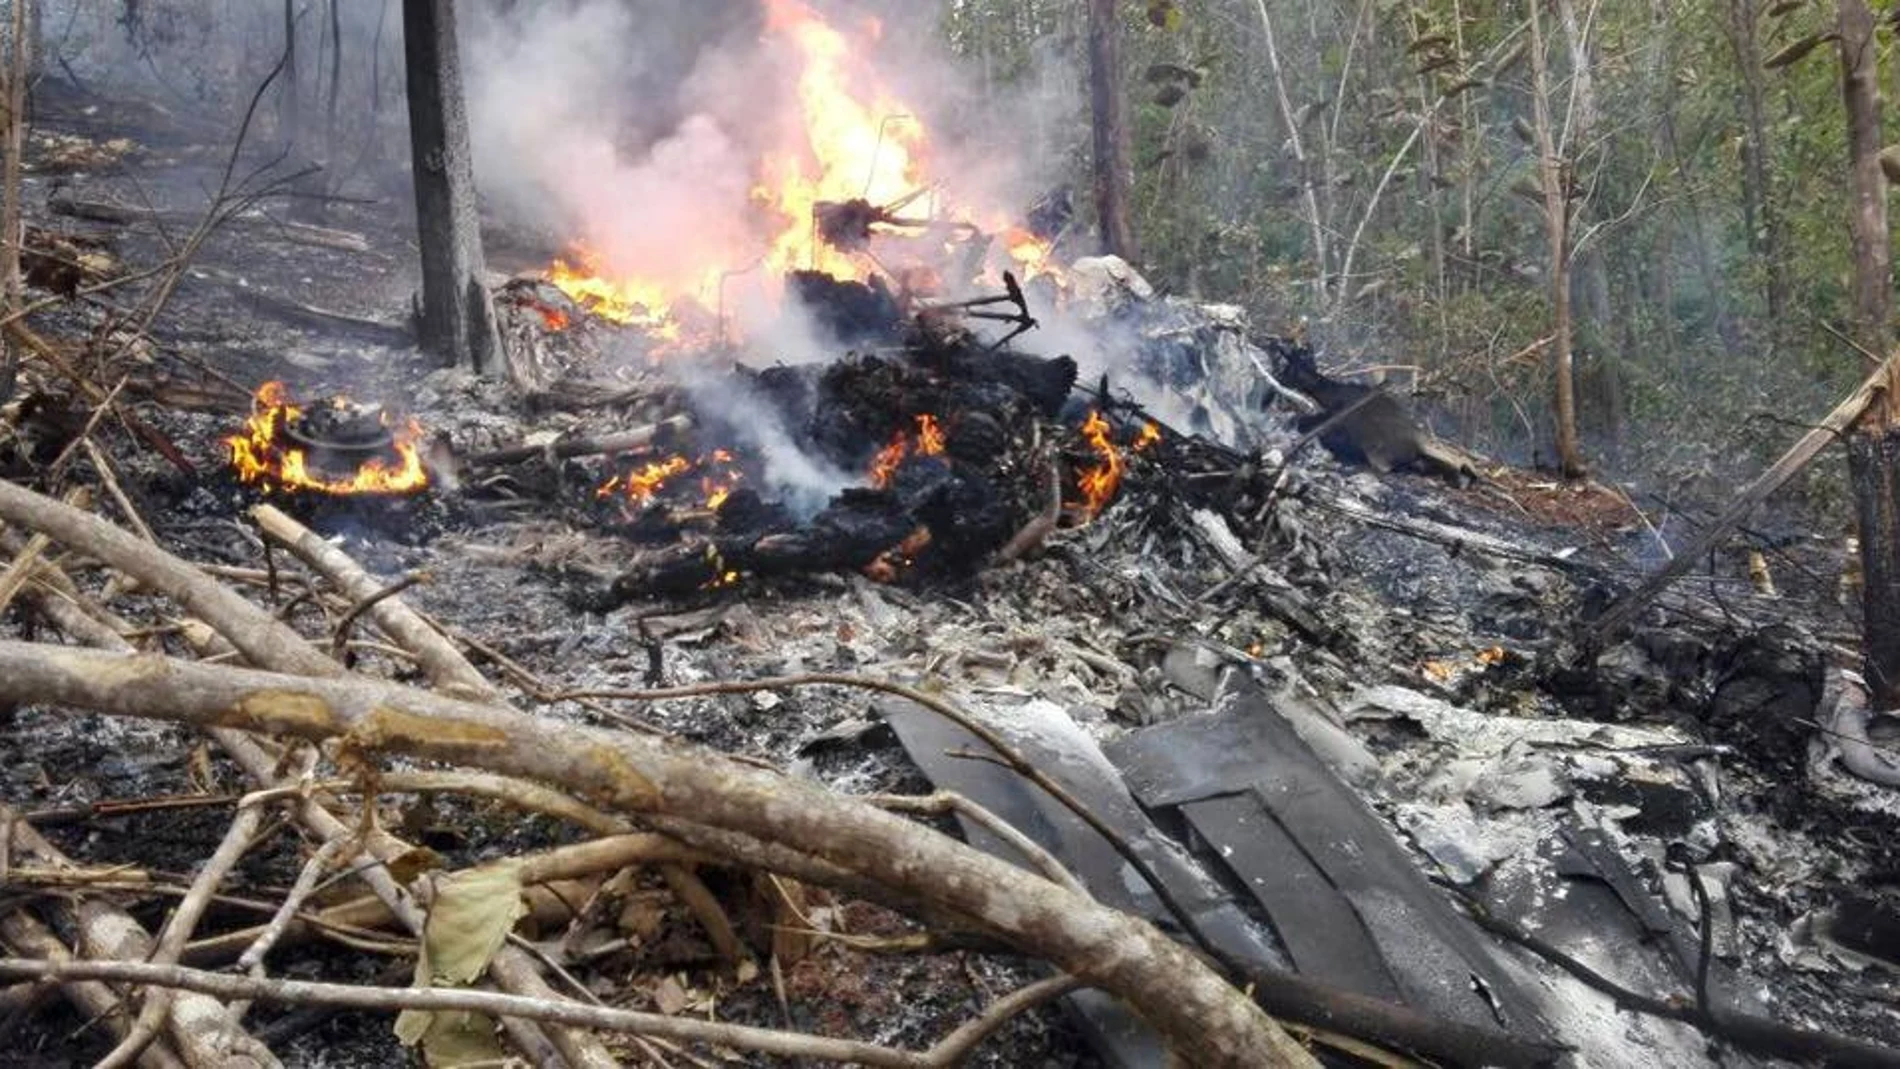 Fotografía cedida por el Ministerio de Seguridad Pública muestra los restos de la avioneta siniestrada.